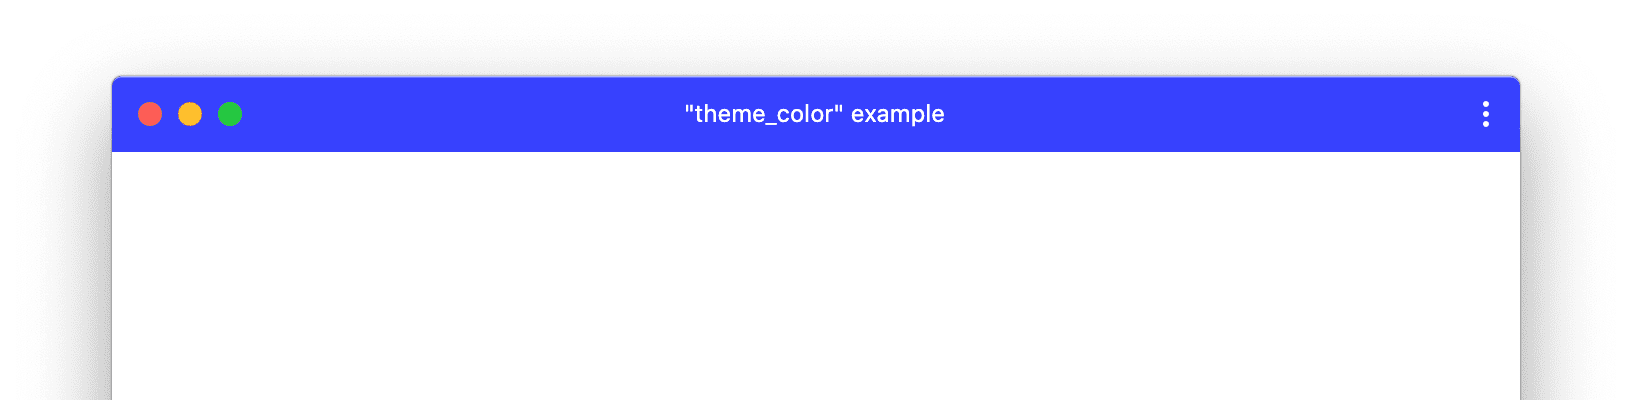 Özel theme_color özelliğine sahip bir PWA penceresi örneği.